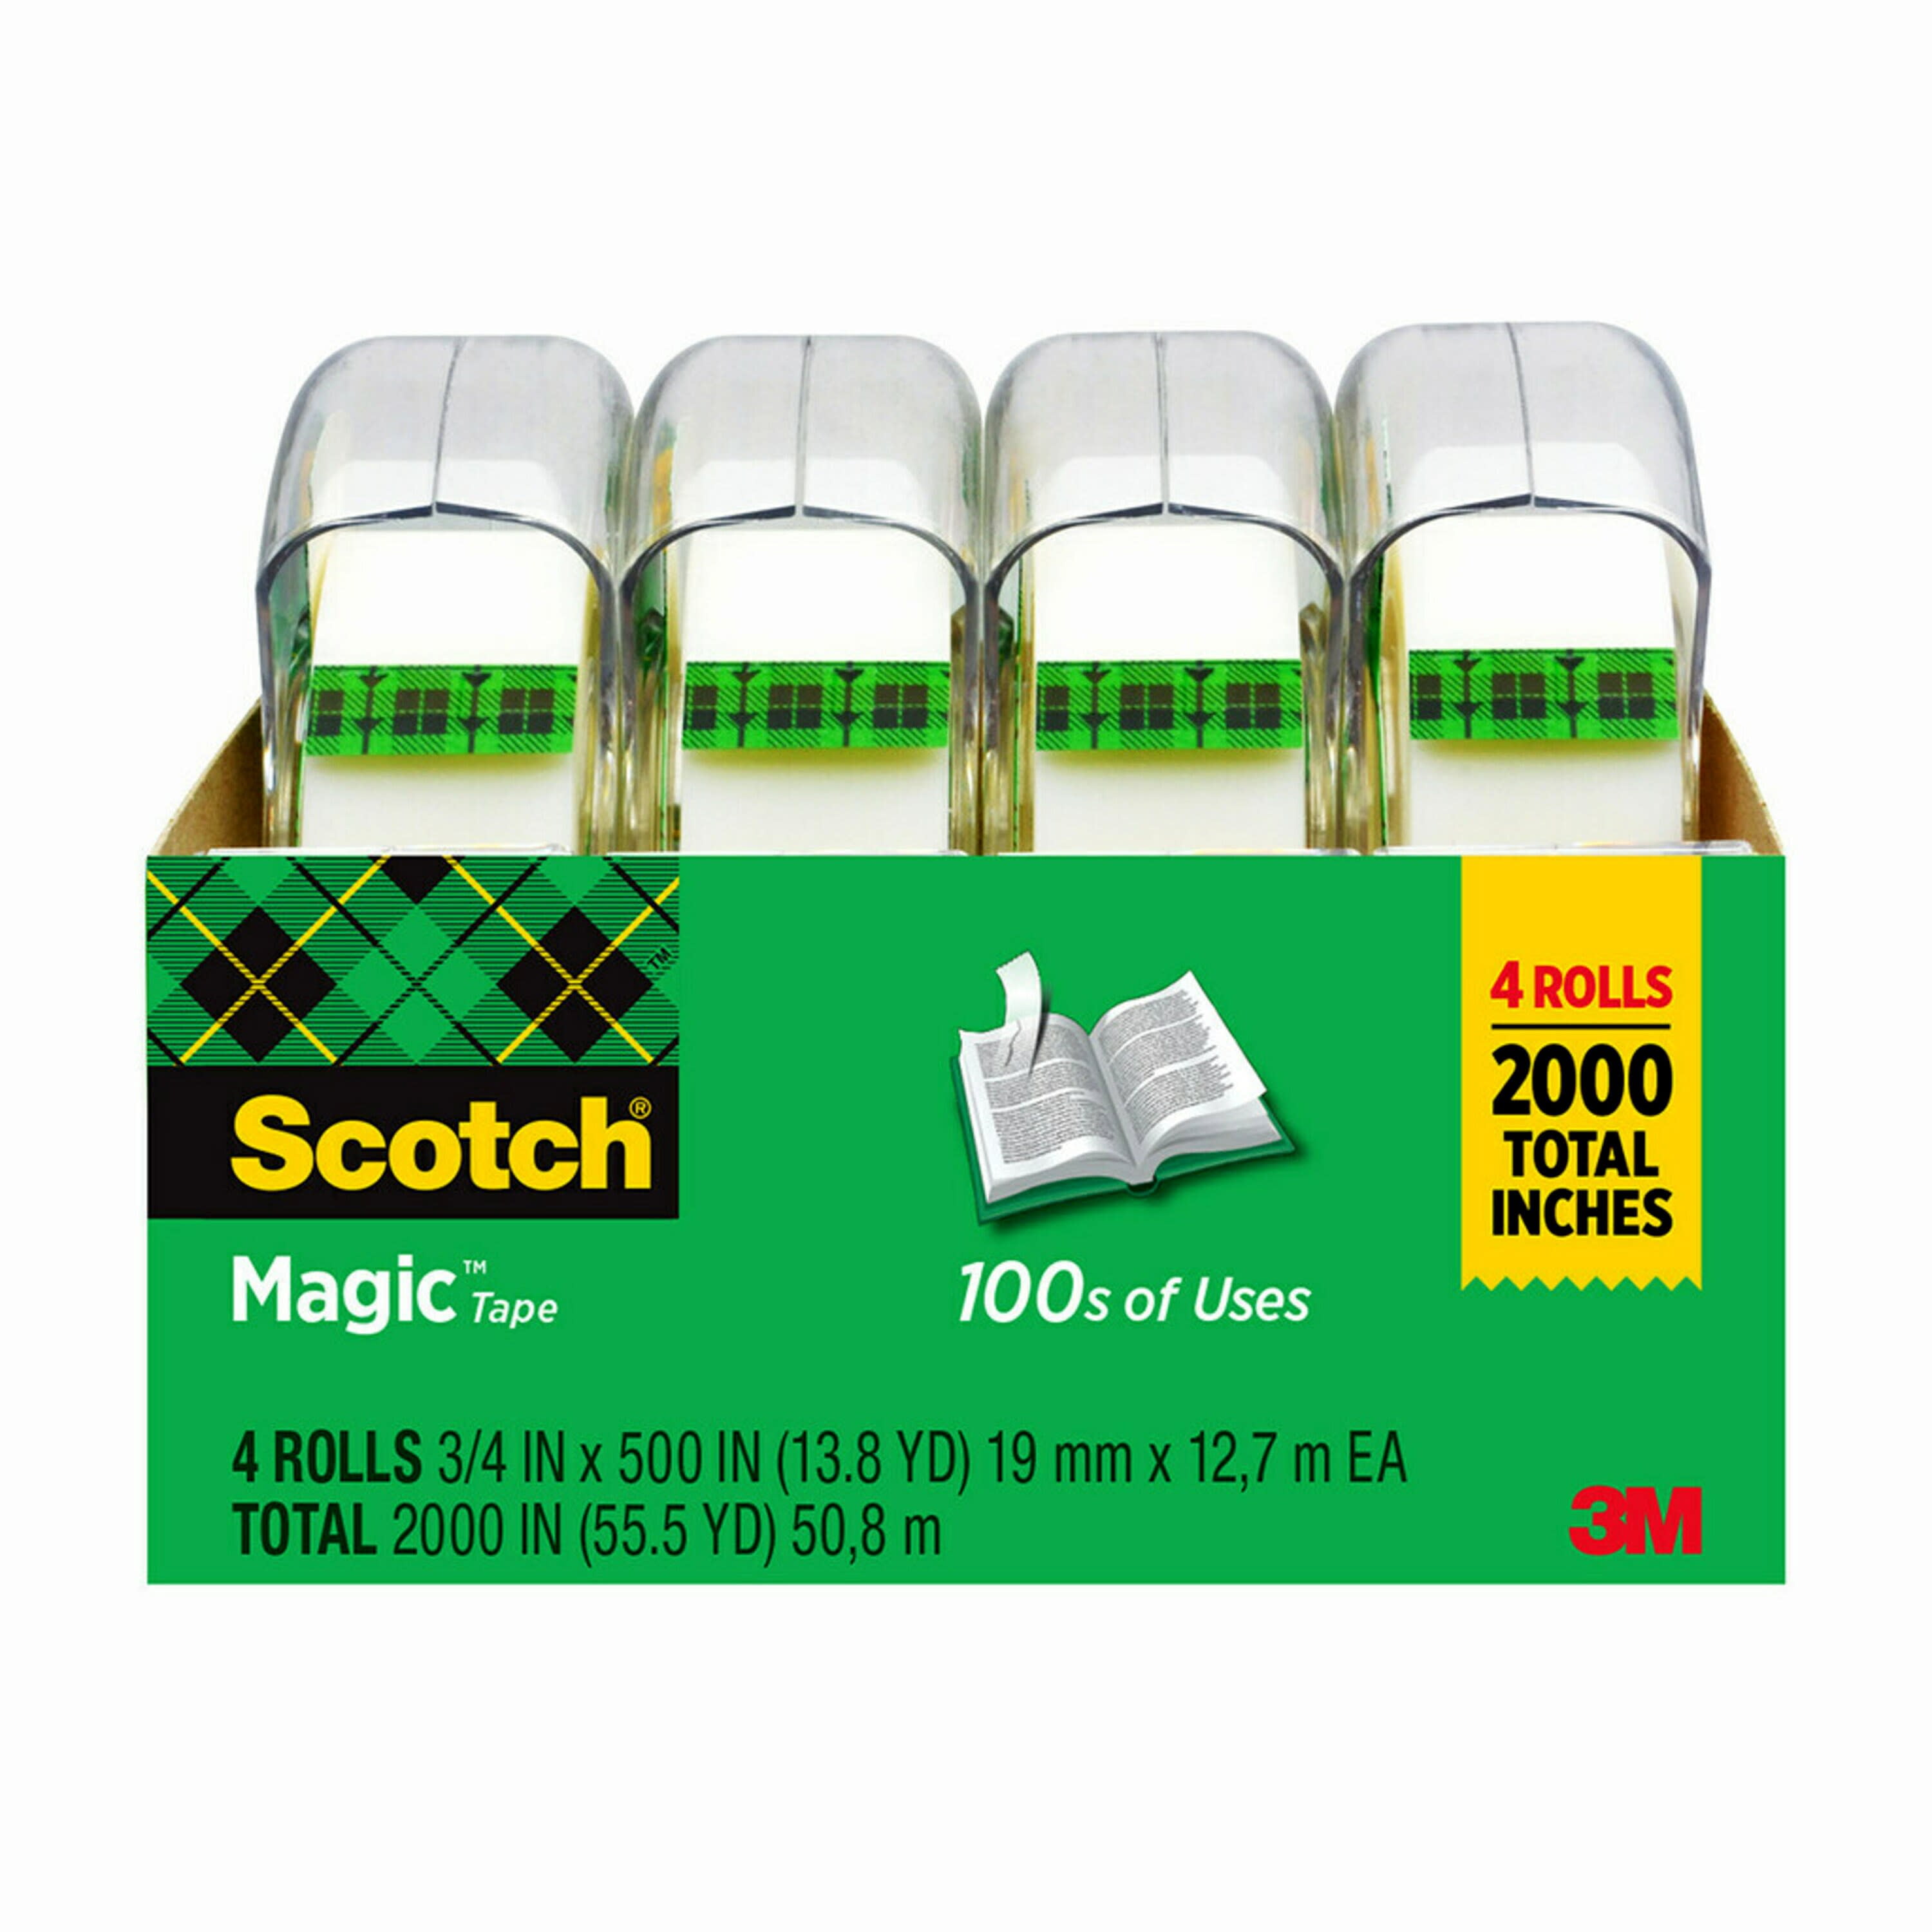 Scotch Magic Tape, 3/4 in. x 500 in., 4 Rolls